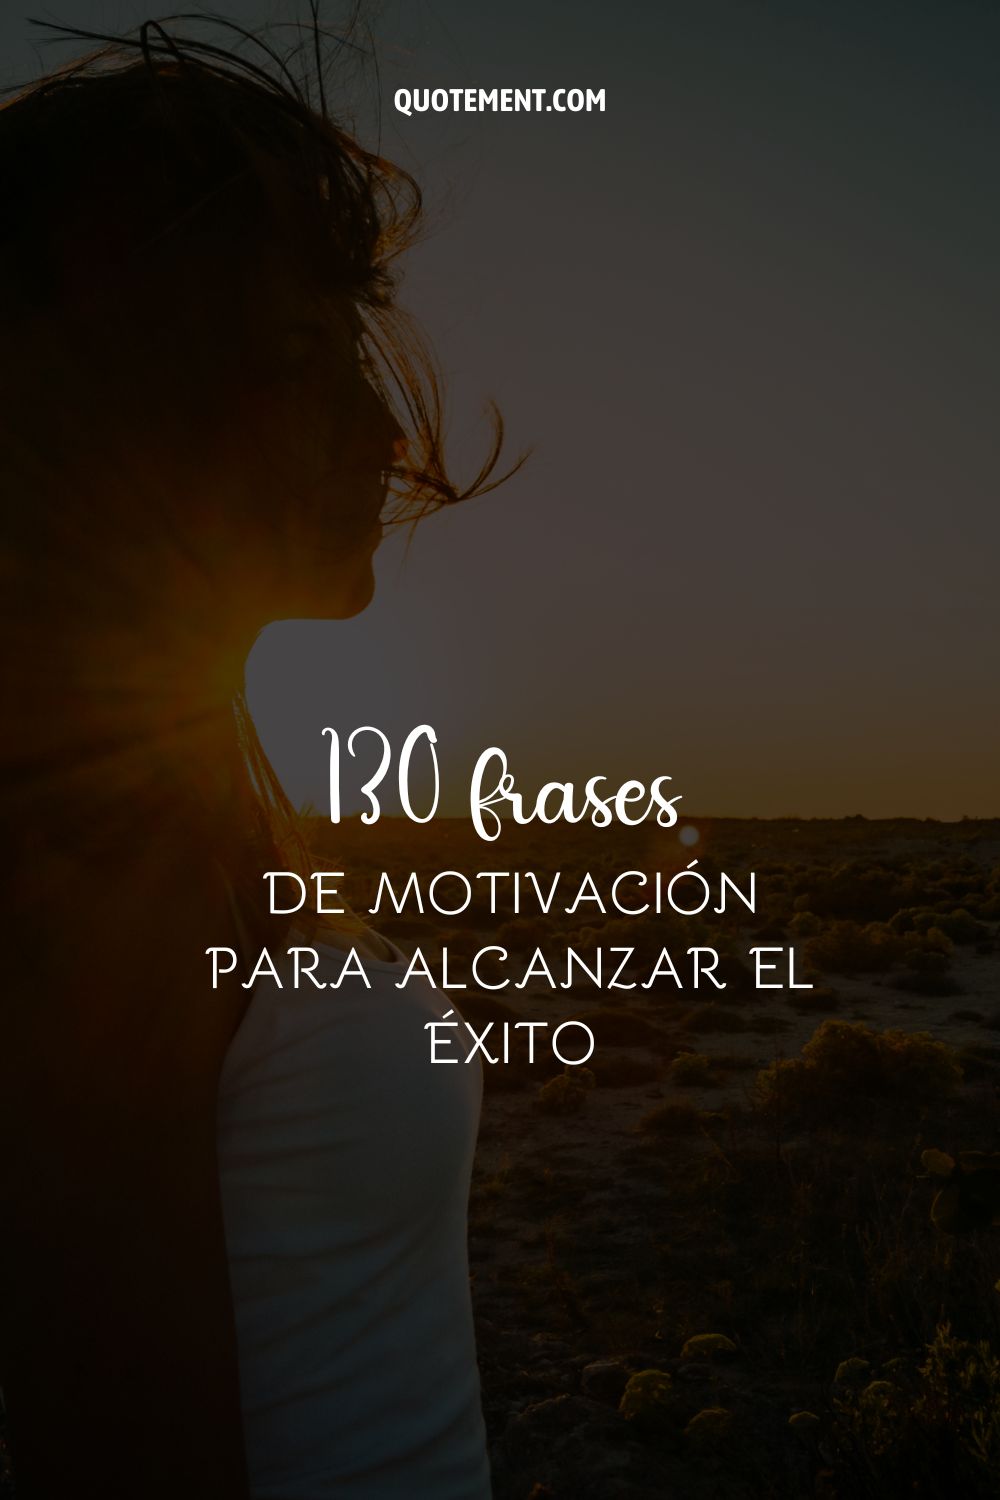 130 frases de motivación para alcanzar el éxito